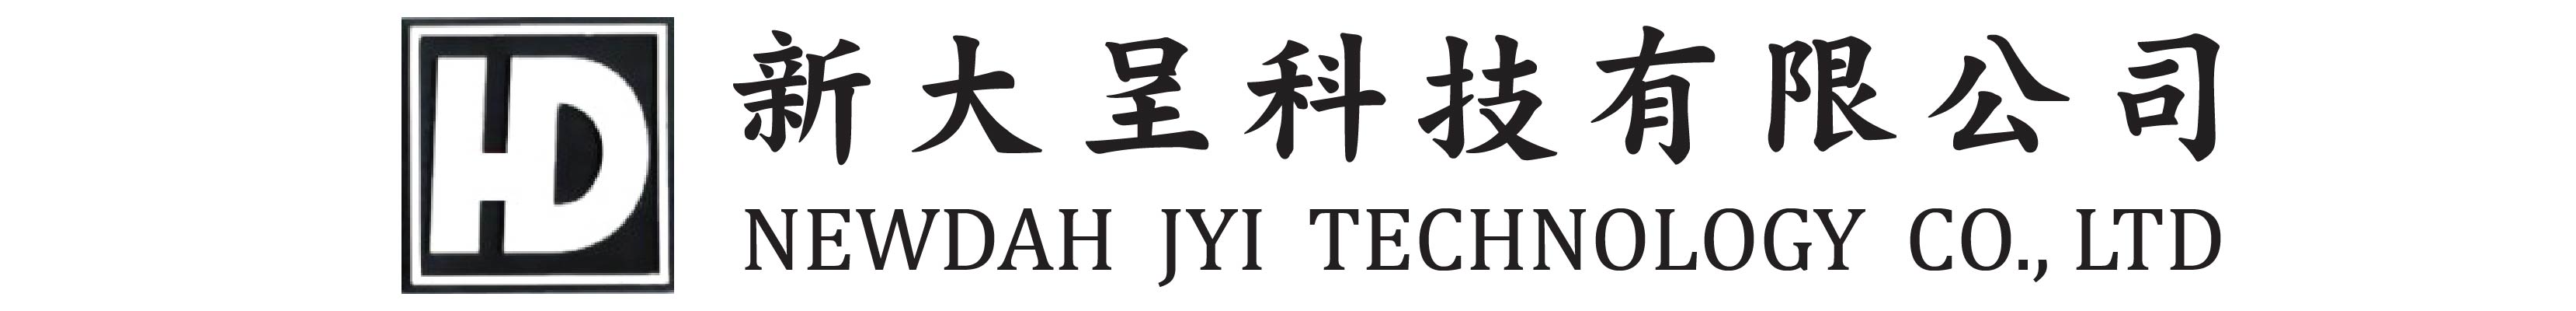 新大呈科系有限公司 - 台灣專業燈光音響工廠